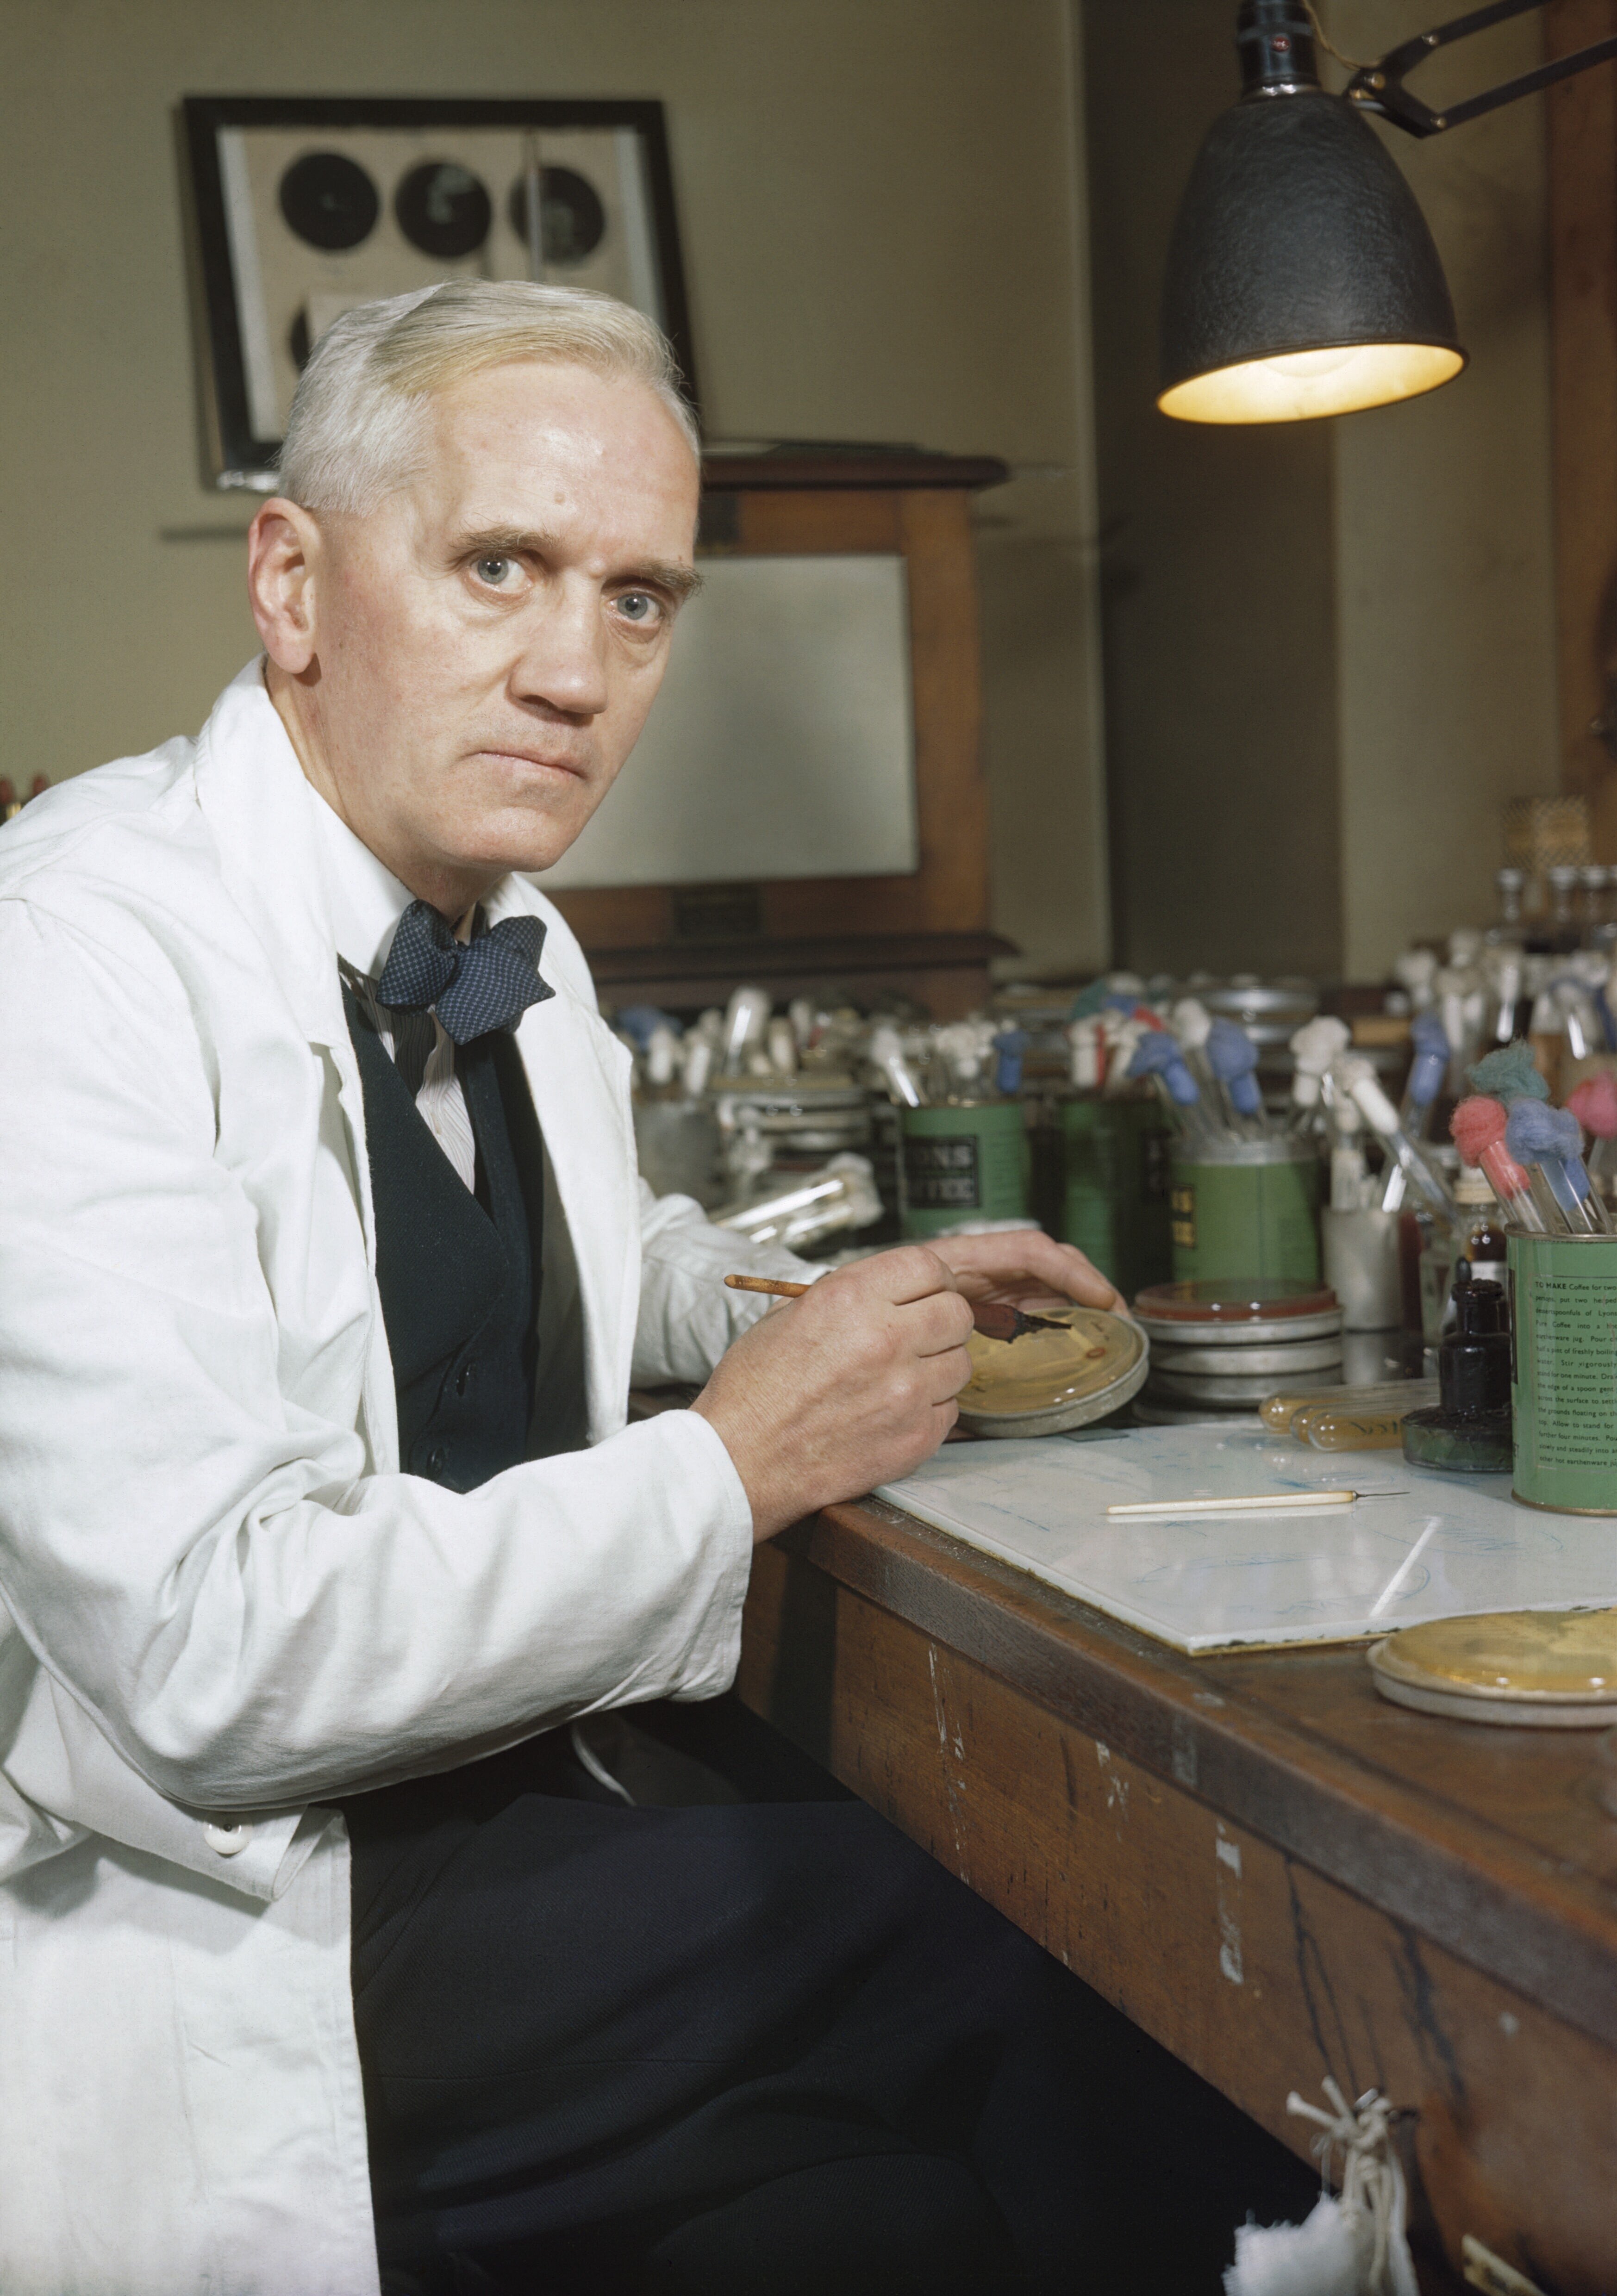 Alexander Fleming sinh năm 1881, ở Ayrshire, Scotland trong một gia đình nông dân có bốn người con. Ông theo học tại trường Louden Moor, trường Darvel và Học viện Kilmarnock trước khi chuyển đến London vào năm 1895, nơi ông ấy sống với anh trai mình. Tại London, Alexander Fleming hoàn thành chương trình giáo dục cơ bản tại Đại học Bách khoa Regent Street (nay là Đại học Westminster). (Ảnh: Wikipedia)